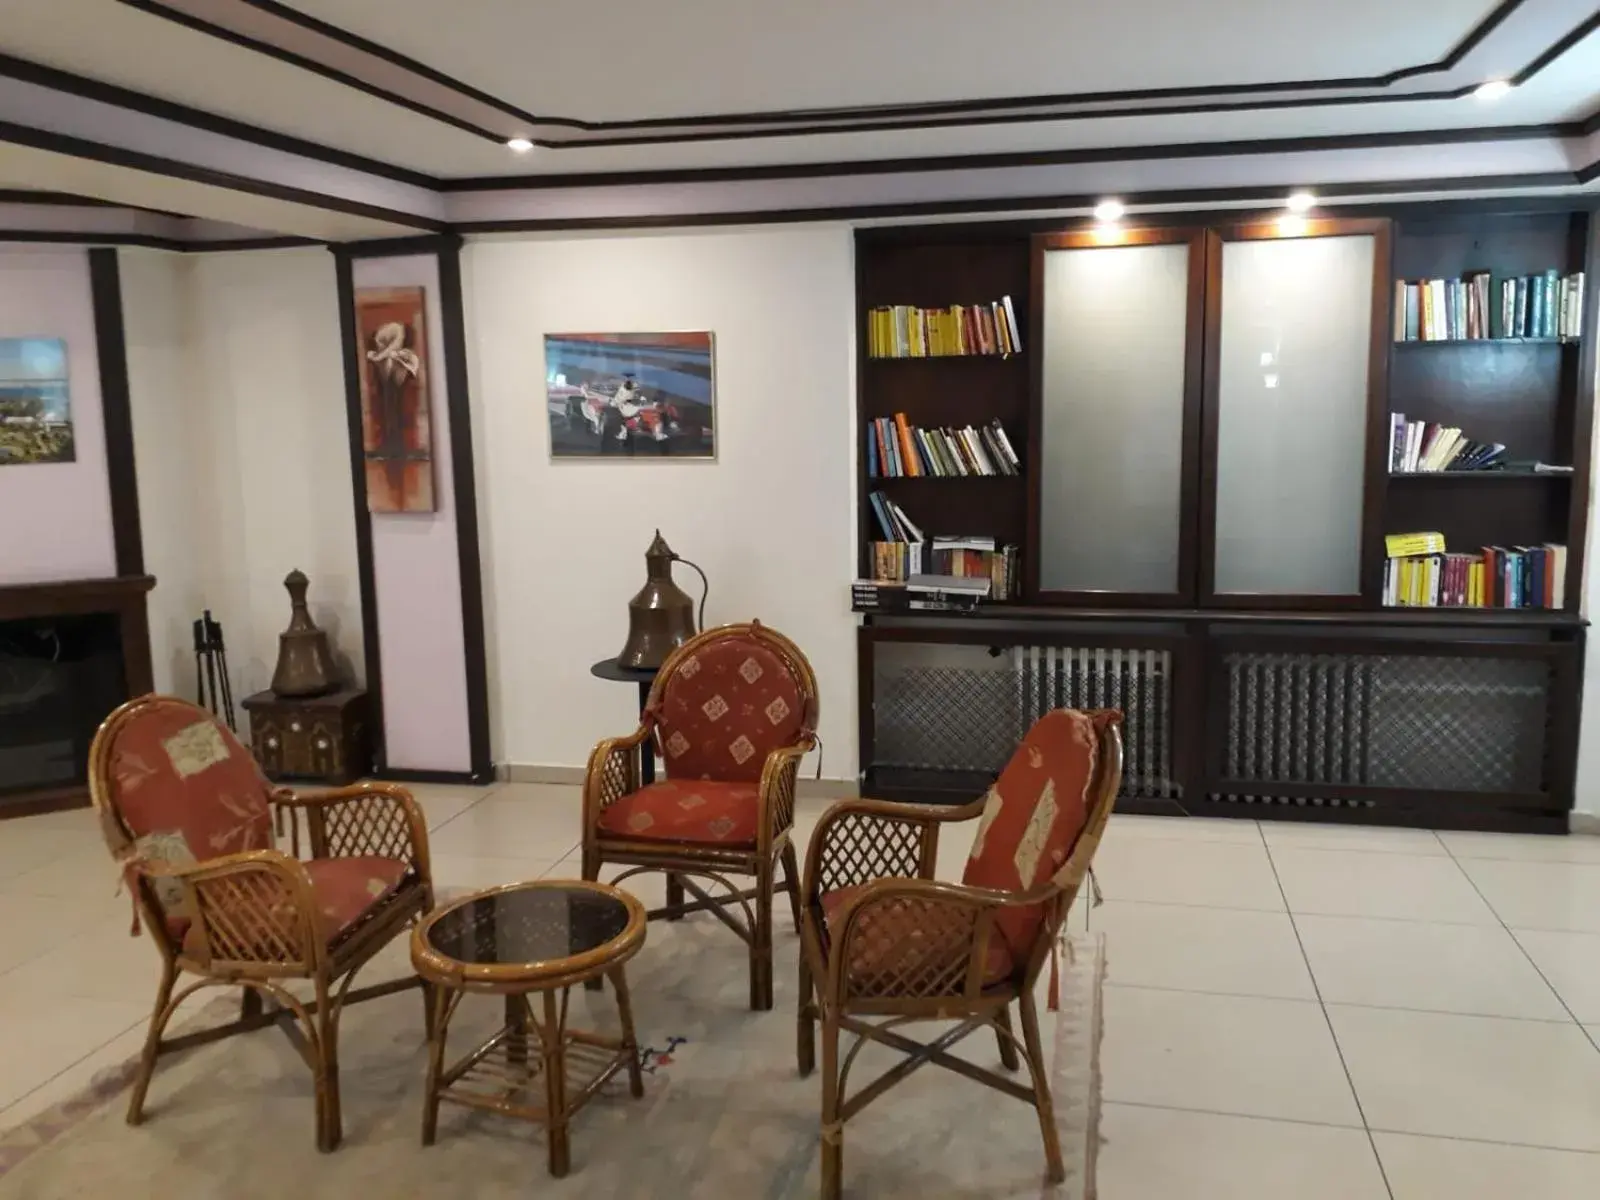 Lounge or bar, Lobby/Reception in Hali Hotel